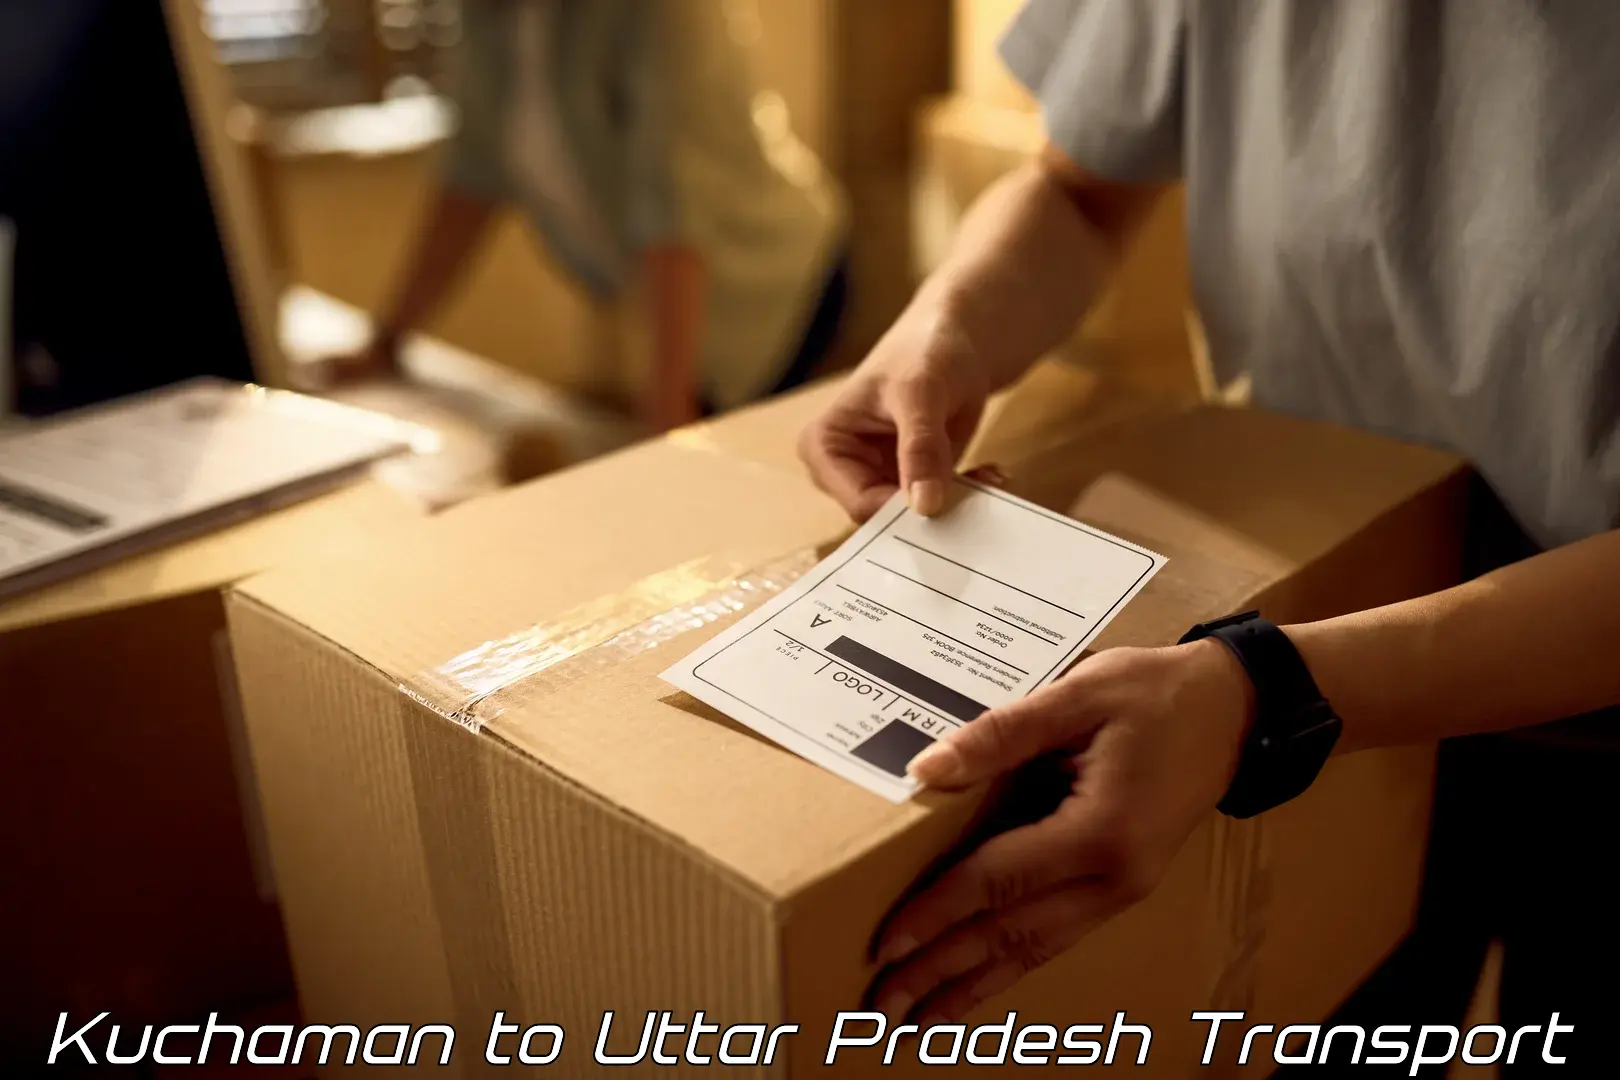 Transport shared services Kuchaman to IIT Varanasi